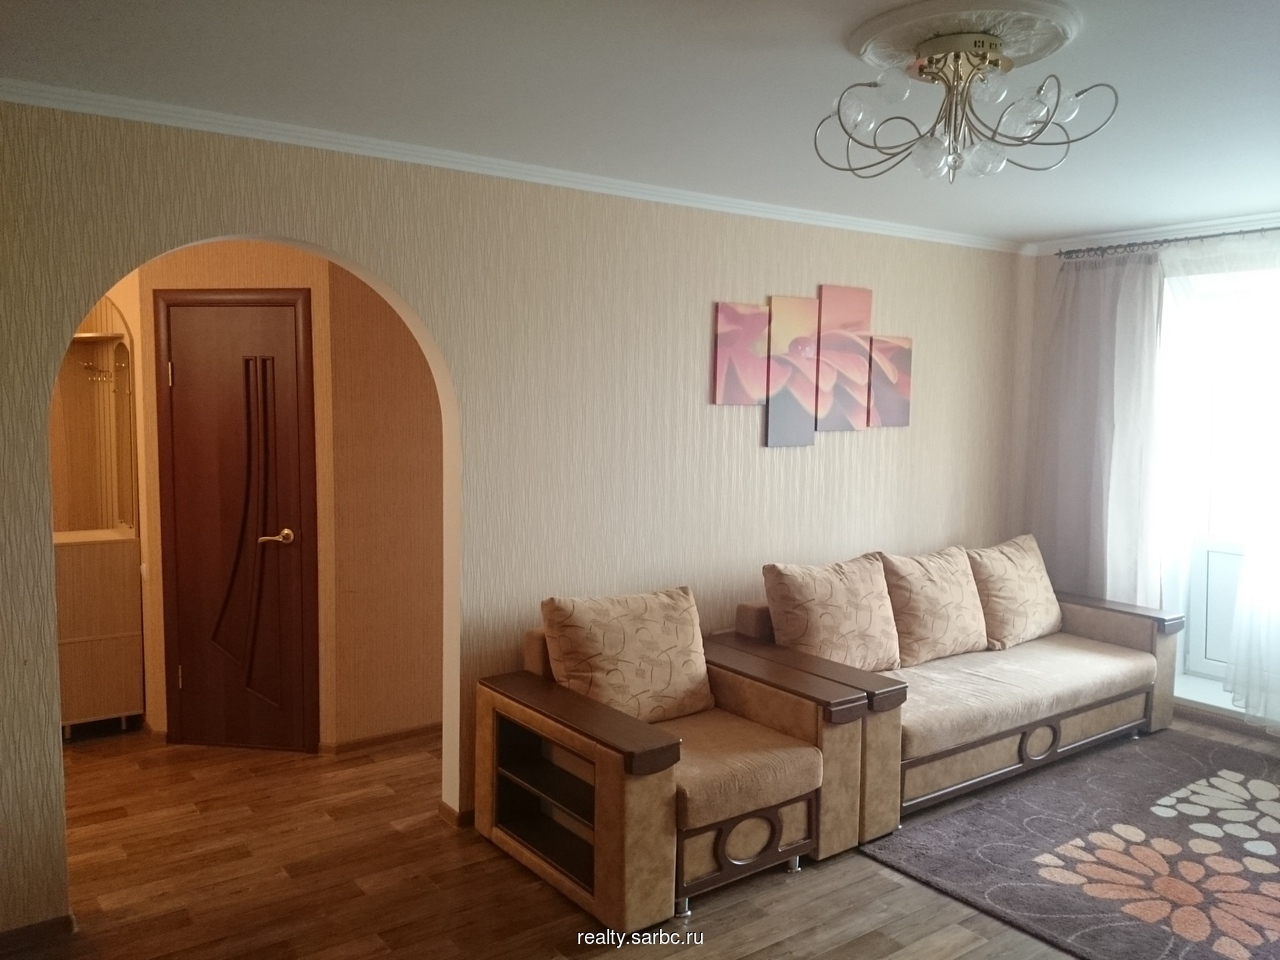 Сниму квартиру в Зернограде на длительный срок Ленина 13 улица